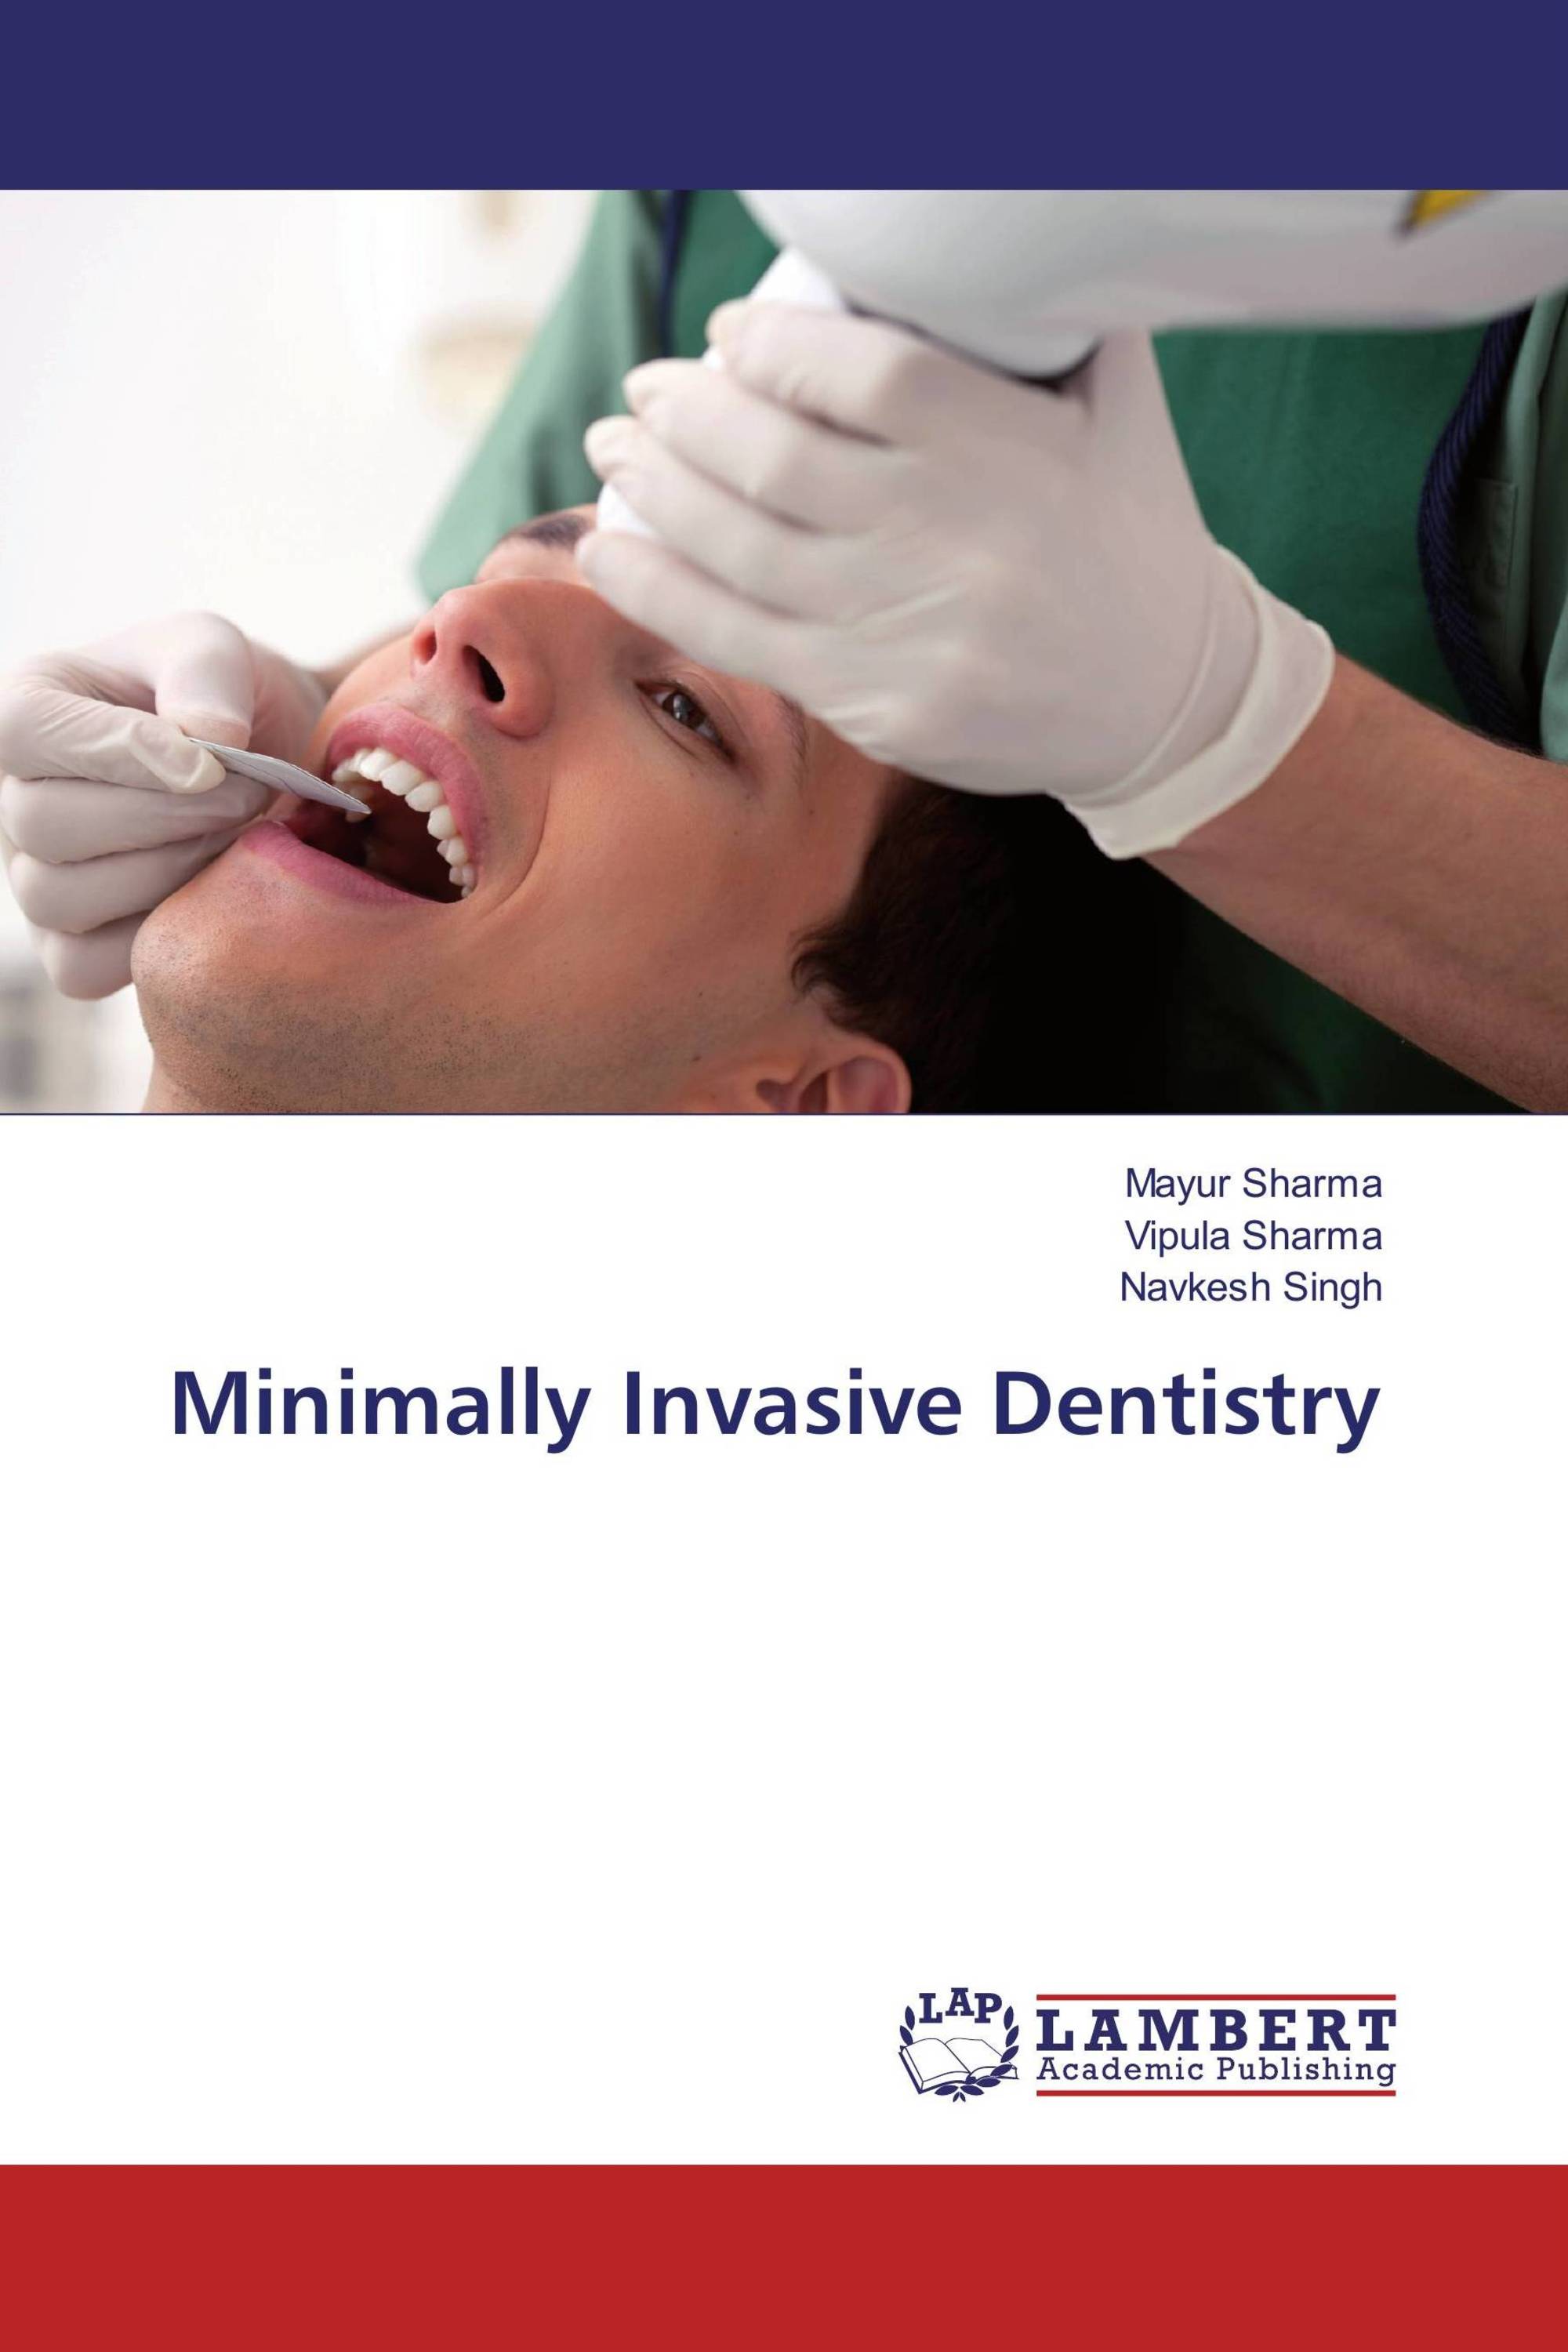 Minimally Invasive Dentistry 978 3 659 86799 6 9783659867996 3659867993 9996